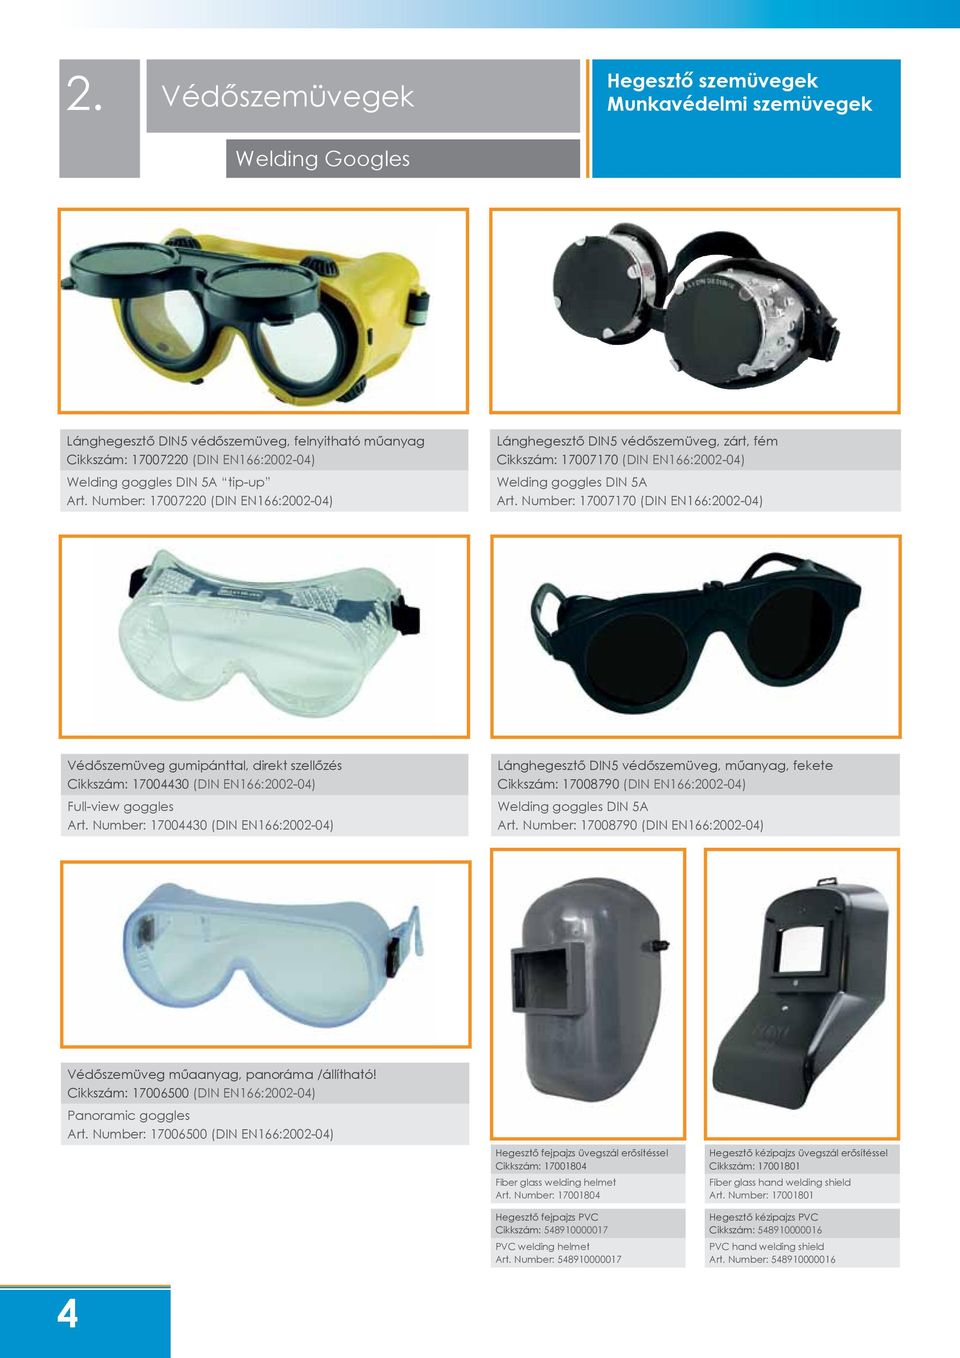 Number: 17007170 (DIN EN166:2002-04) Védőszemüveg gumipánttal, direkt szellőzés Cikkszám: 17004430 (DIN EN166:2002-04) Full-view goggles Art.